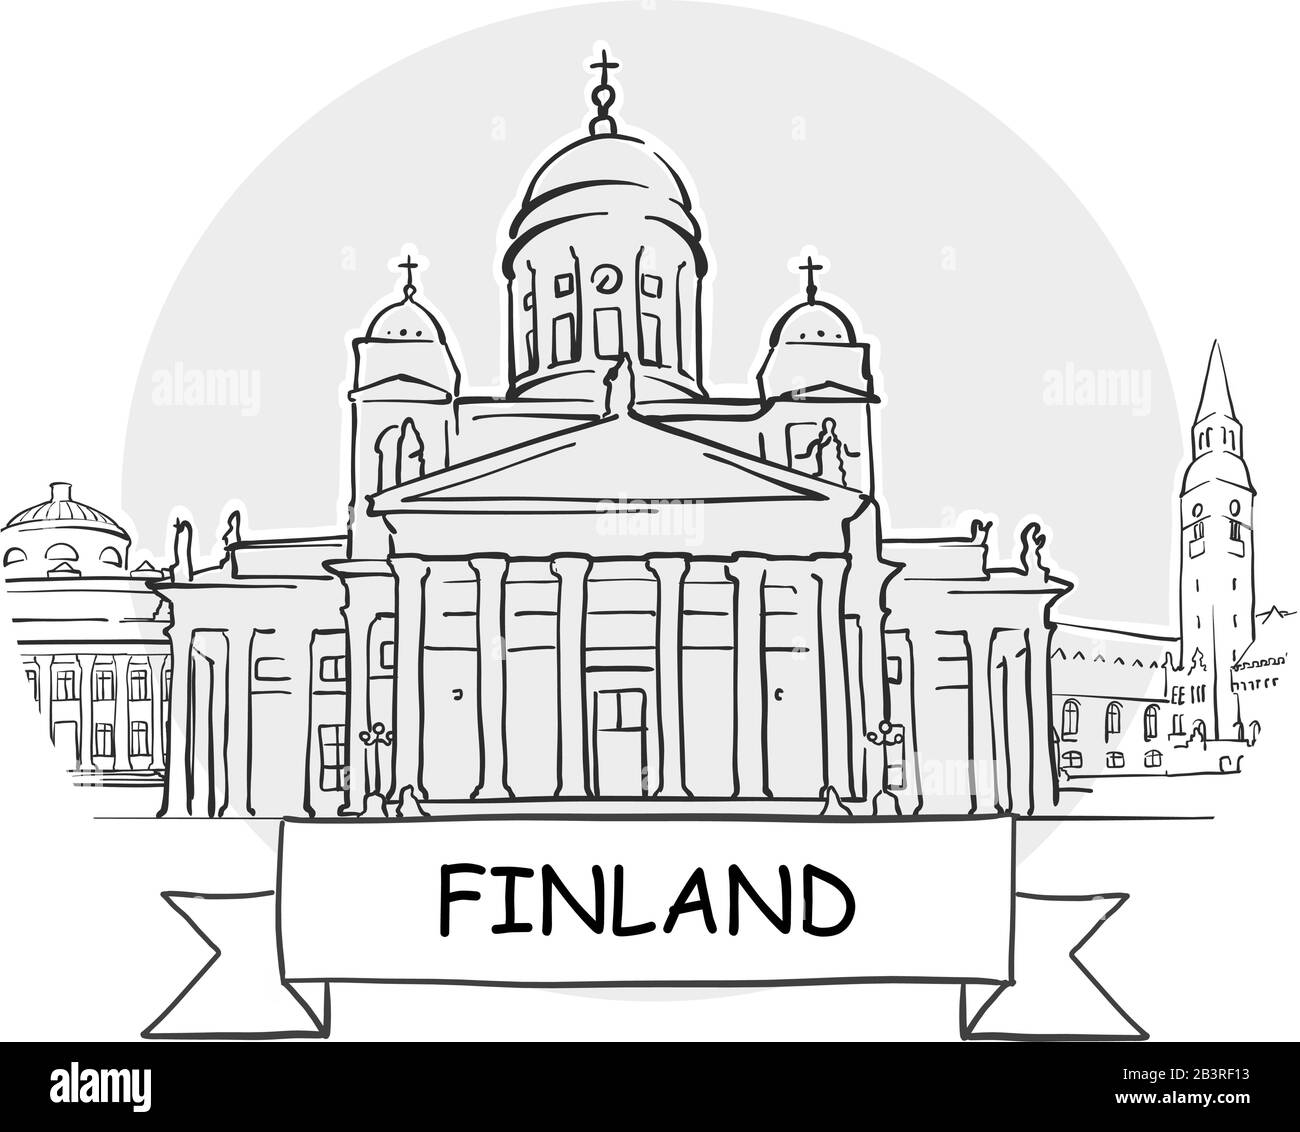 Finnland Hand-Drawn Stadtvektor-Zeichen. Schwarze Strichzeichnung mit Farbband und Titel. Stock Vektor